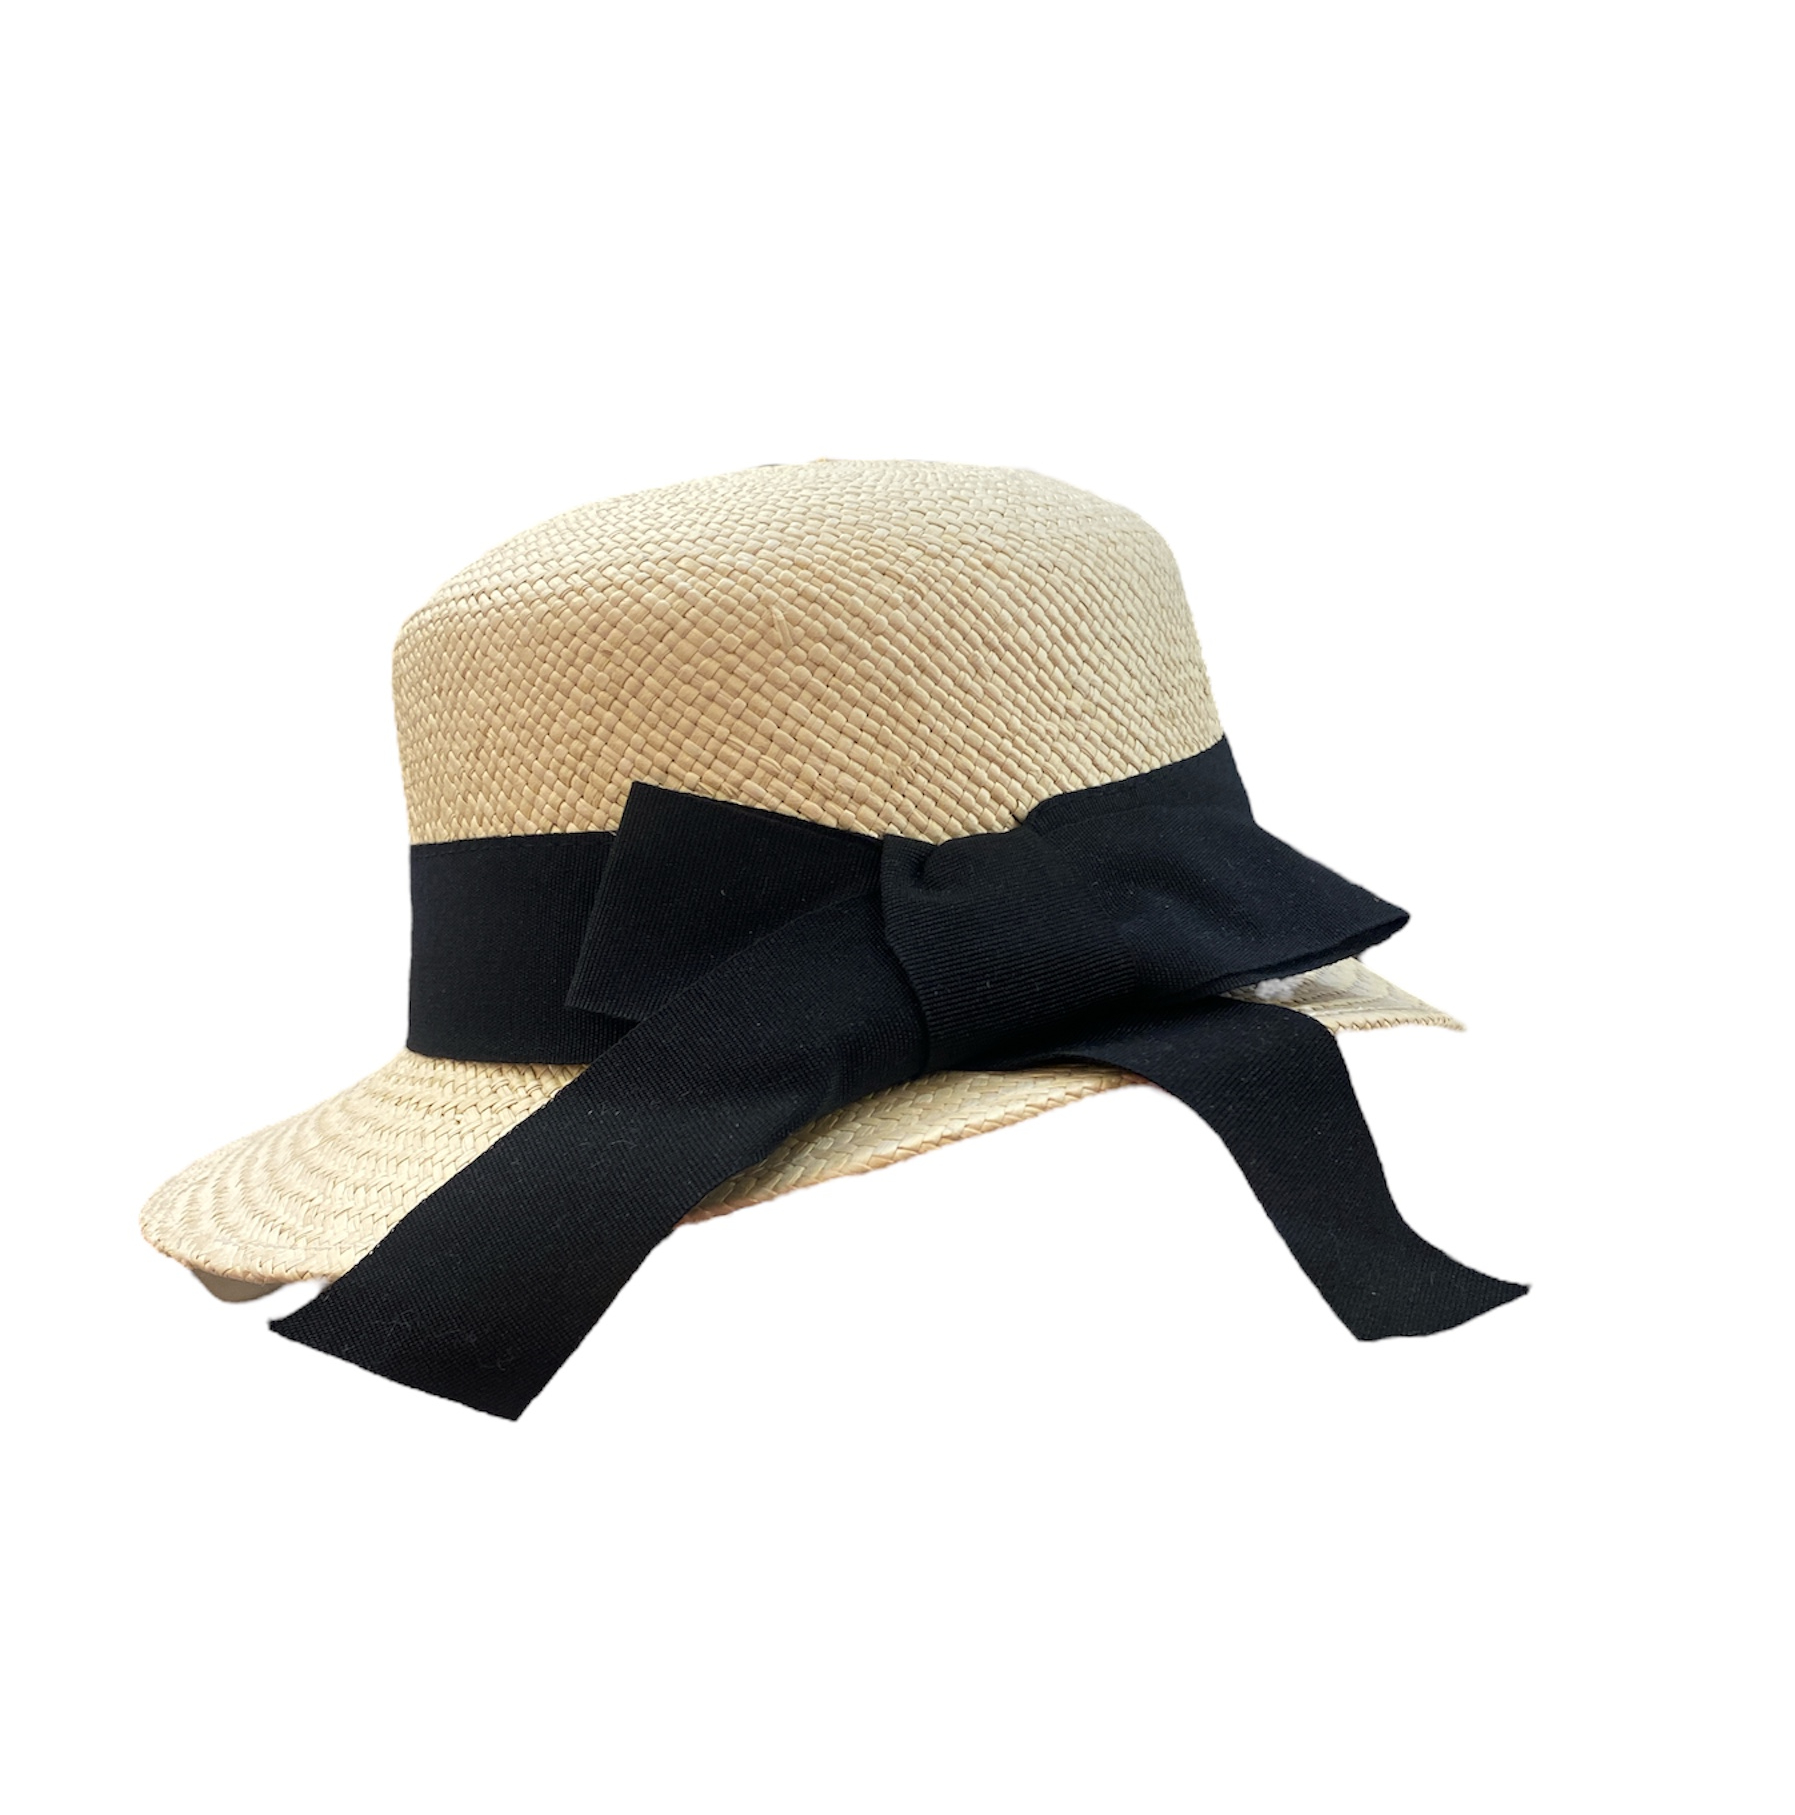 Chapeau romantique Panama avec noeud noir